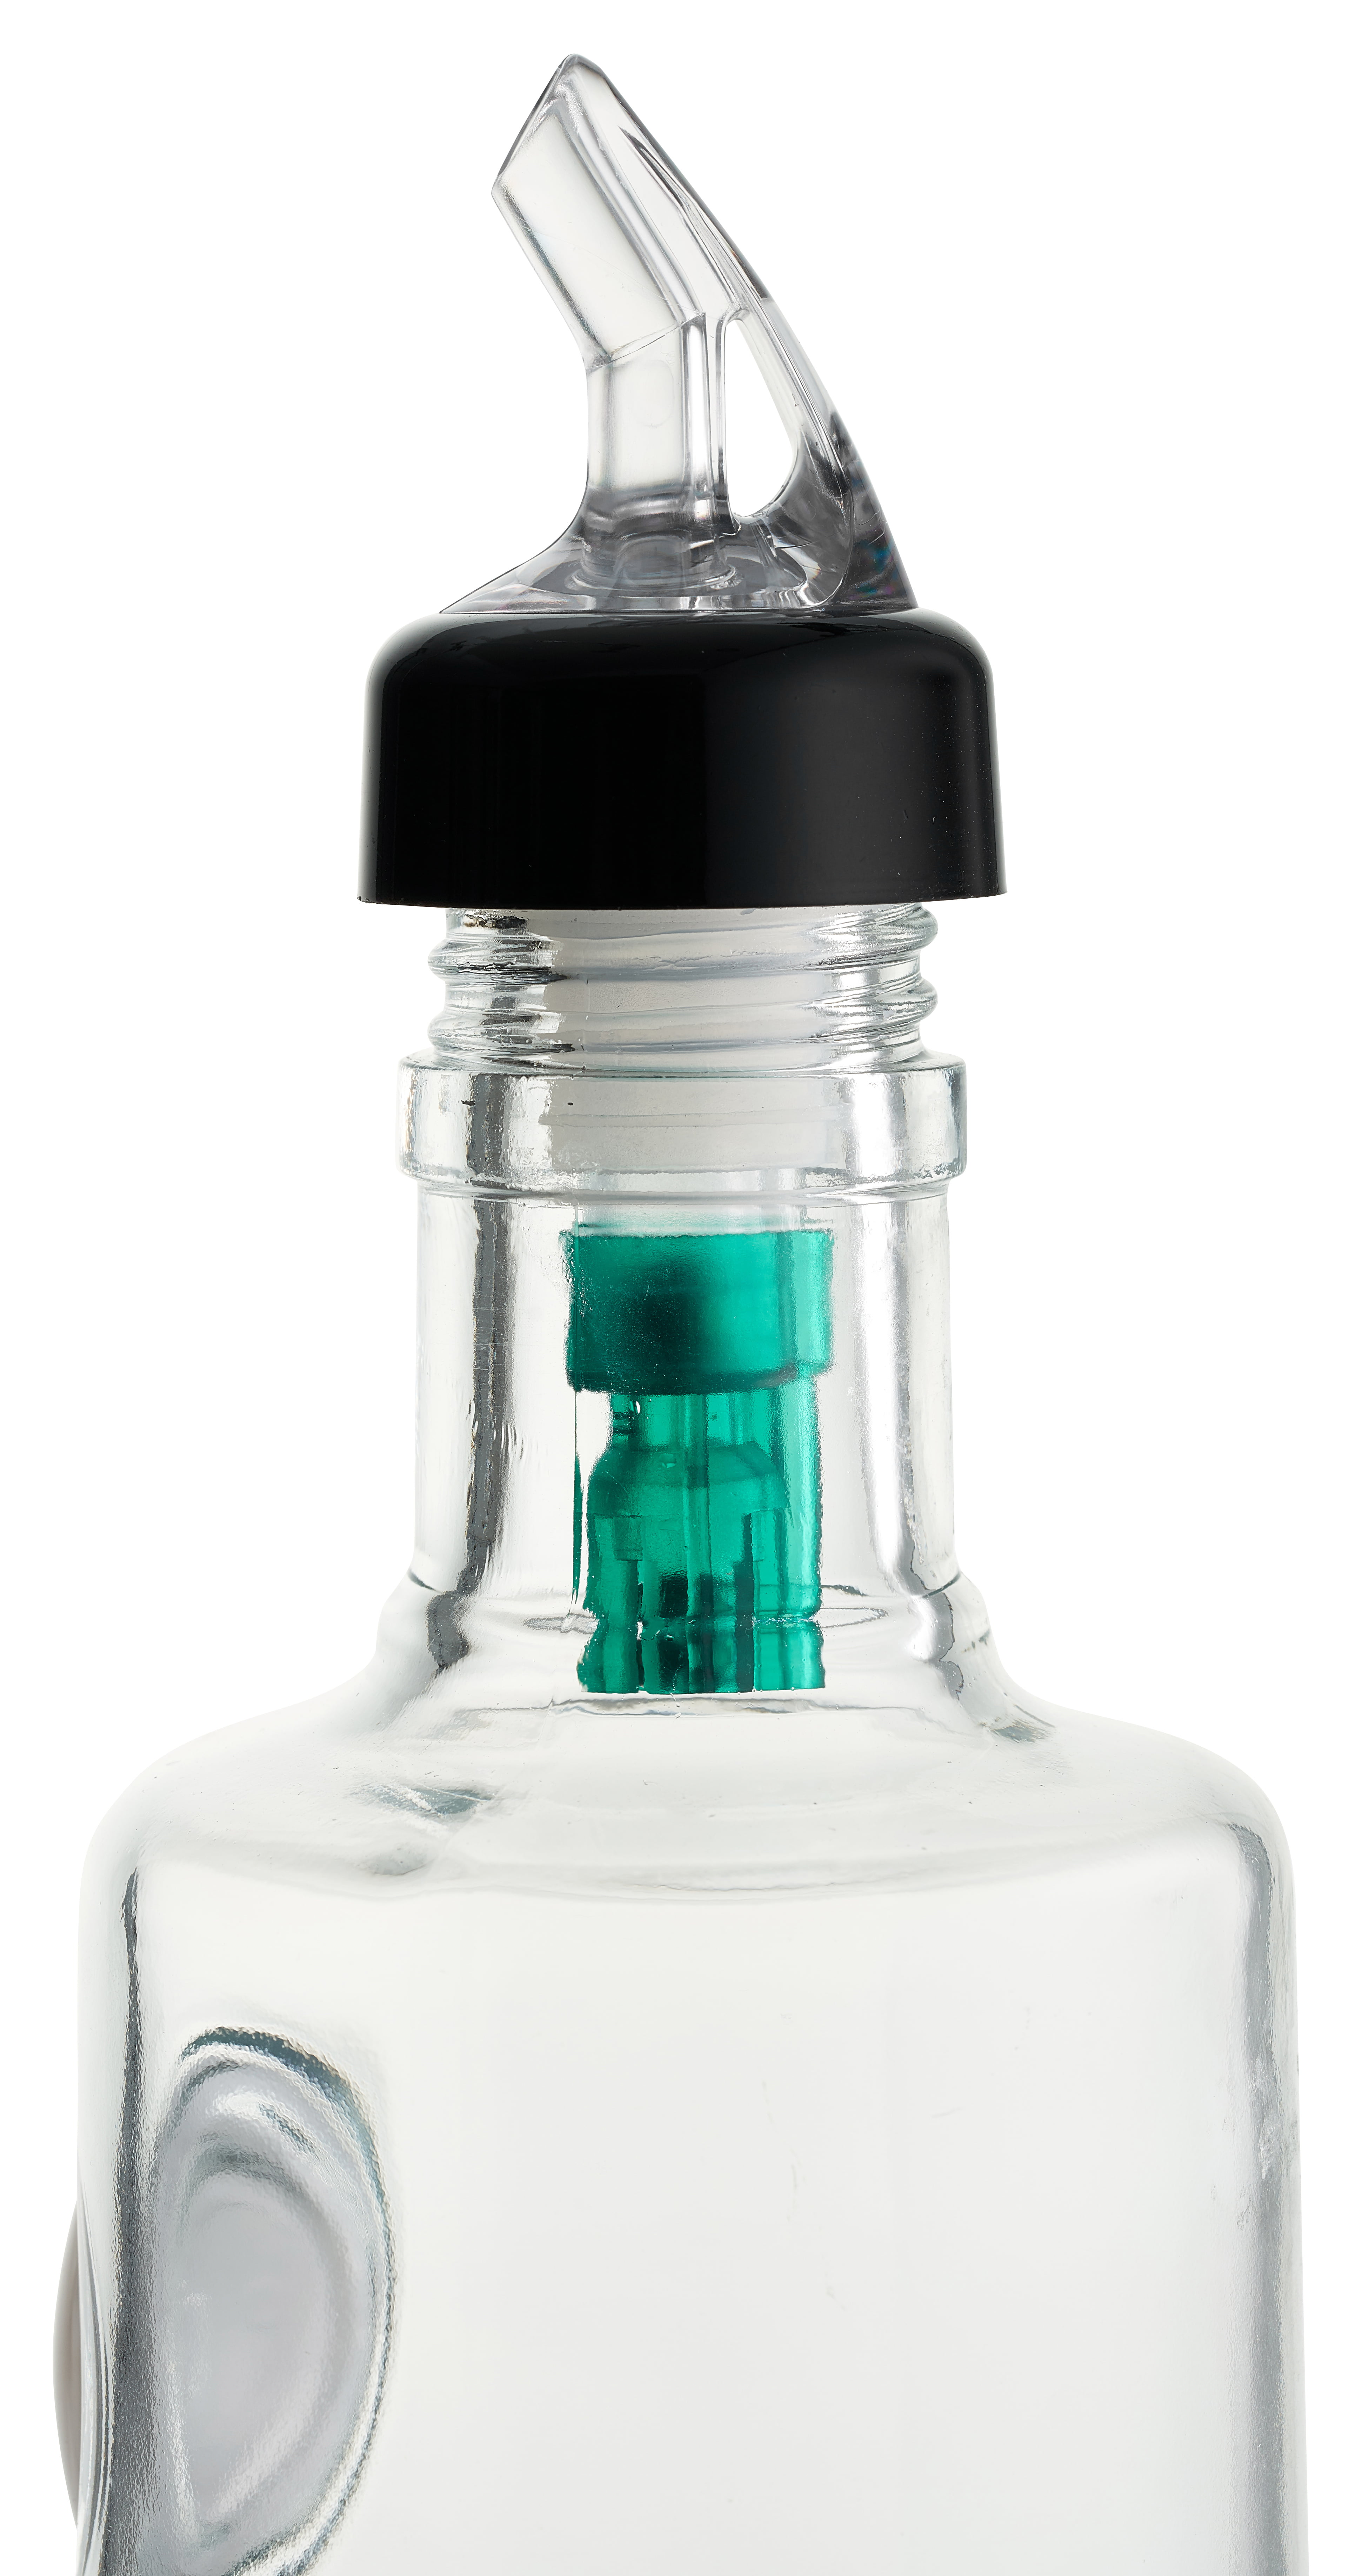 [6 PACK] Measured Liquor Bottle Pourers 0.5 oz (15 mL) - Collared Automatic  Measured Bottle Pourer - No Cracks, No Leaks, Bar Spouts, Quick Shot, 